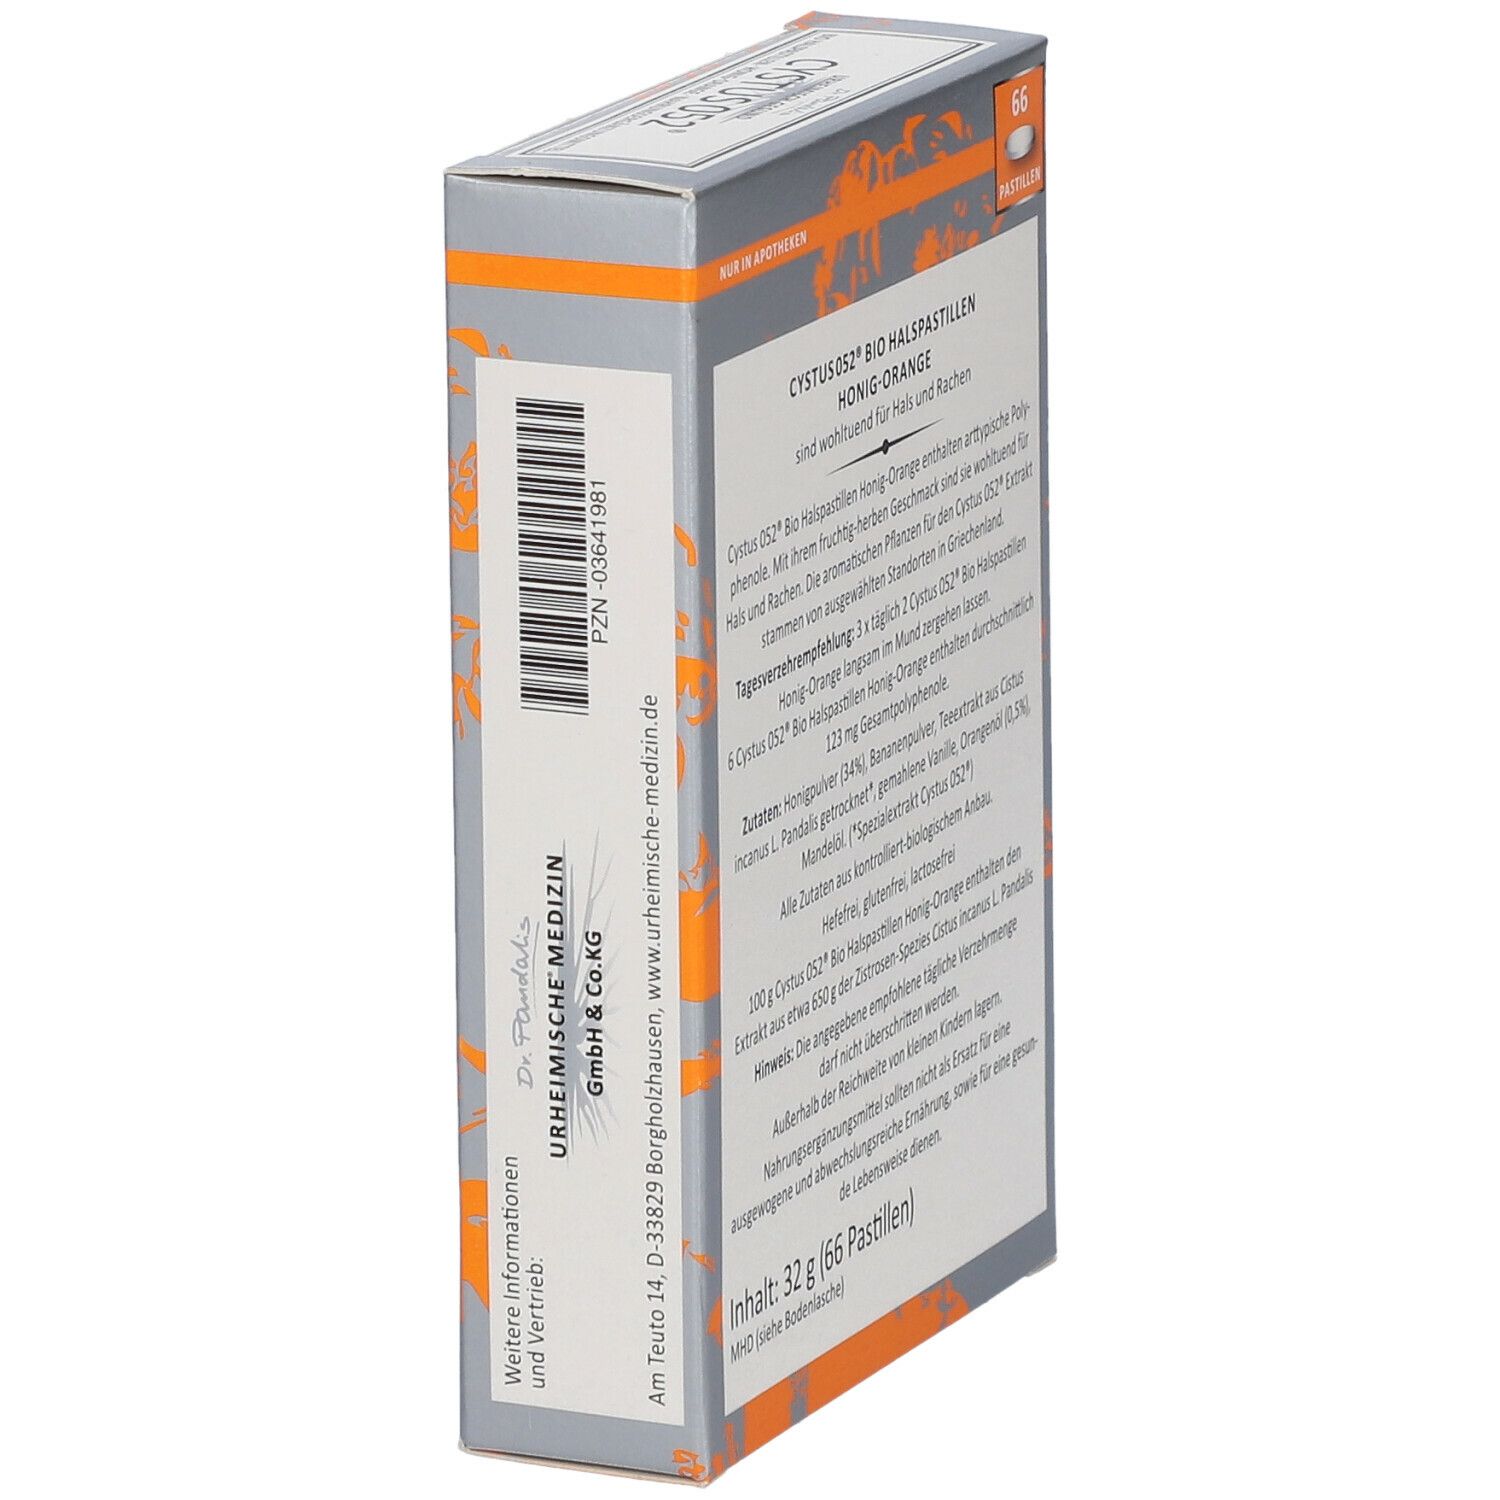 Dr. Pandalis Cystus 052® Bio Halspastillen – Honig-Orange